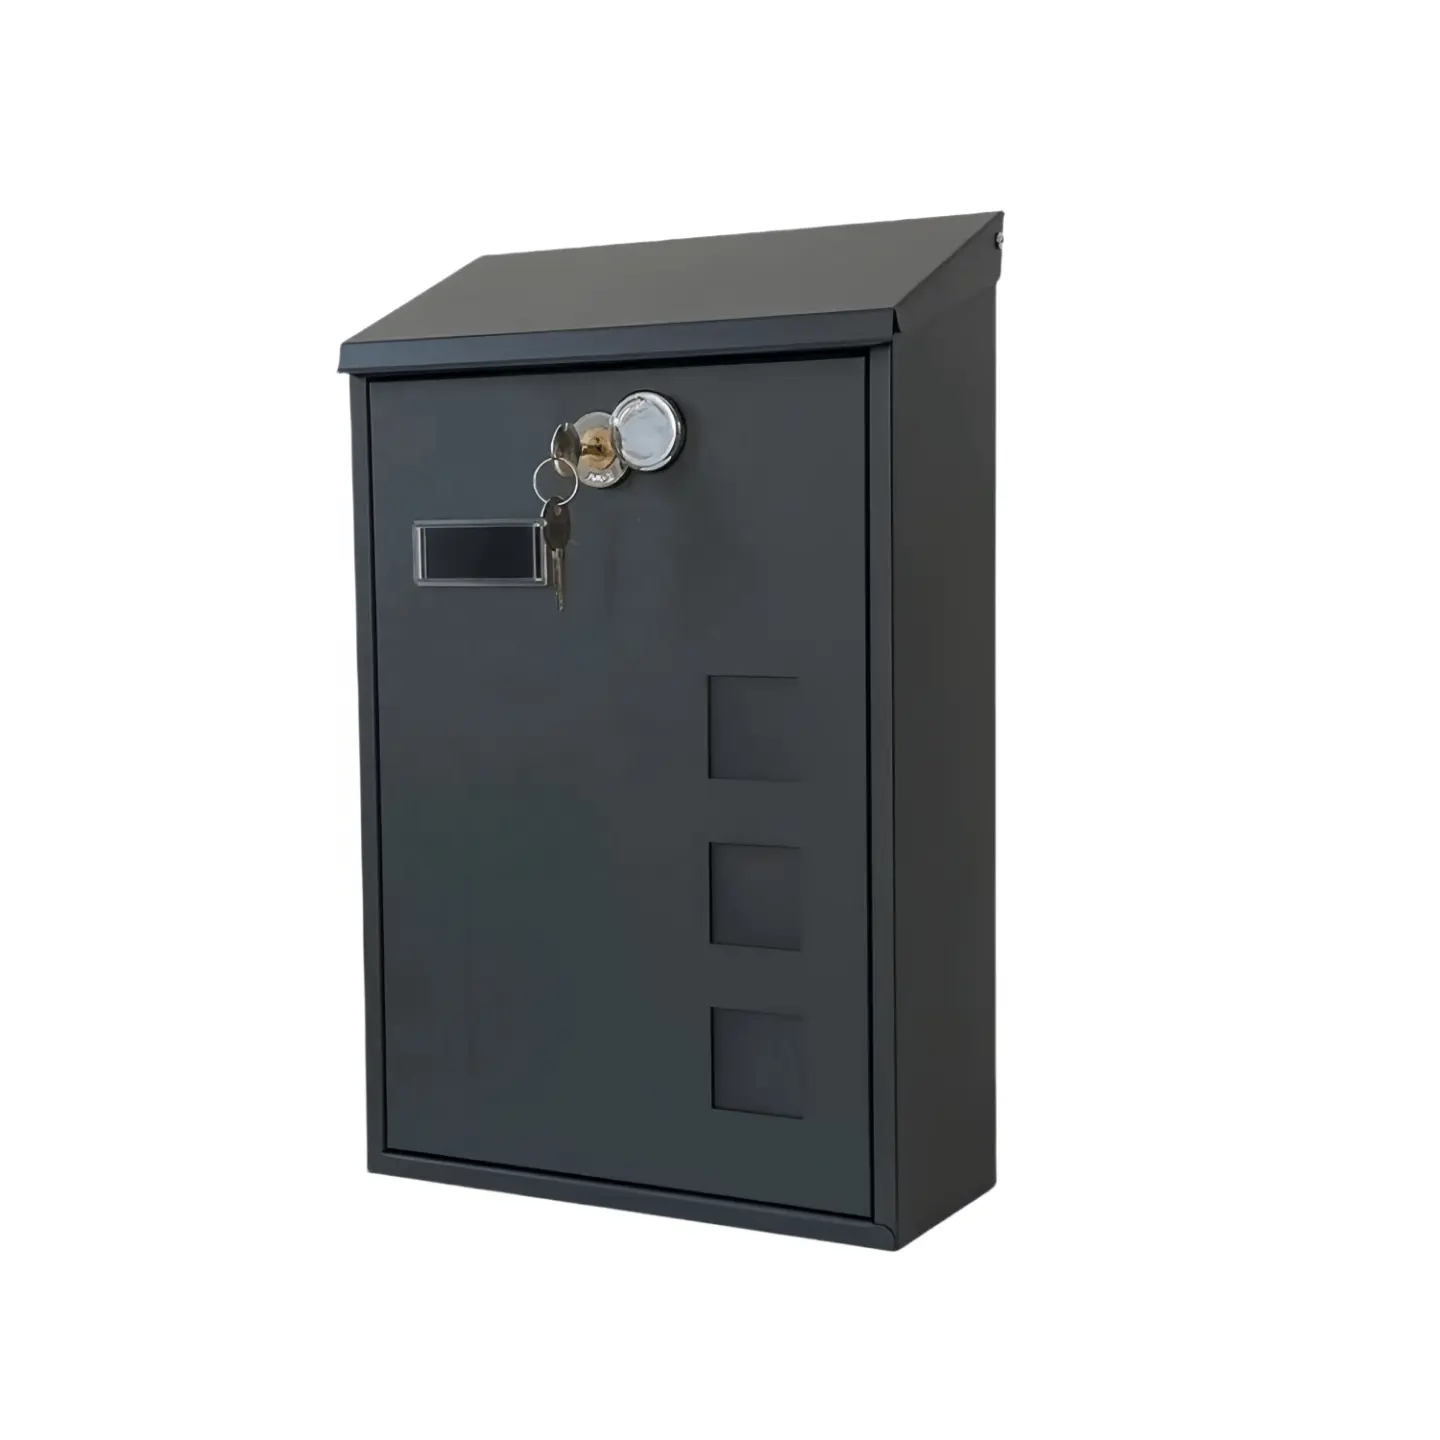 OEM customed combinazione serratura Mailbox lavorazione lamiera di acciaio inossidabile scatole di trattamento delle superfici servizio di trattamento delle superfici